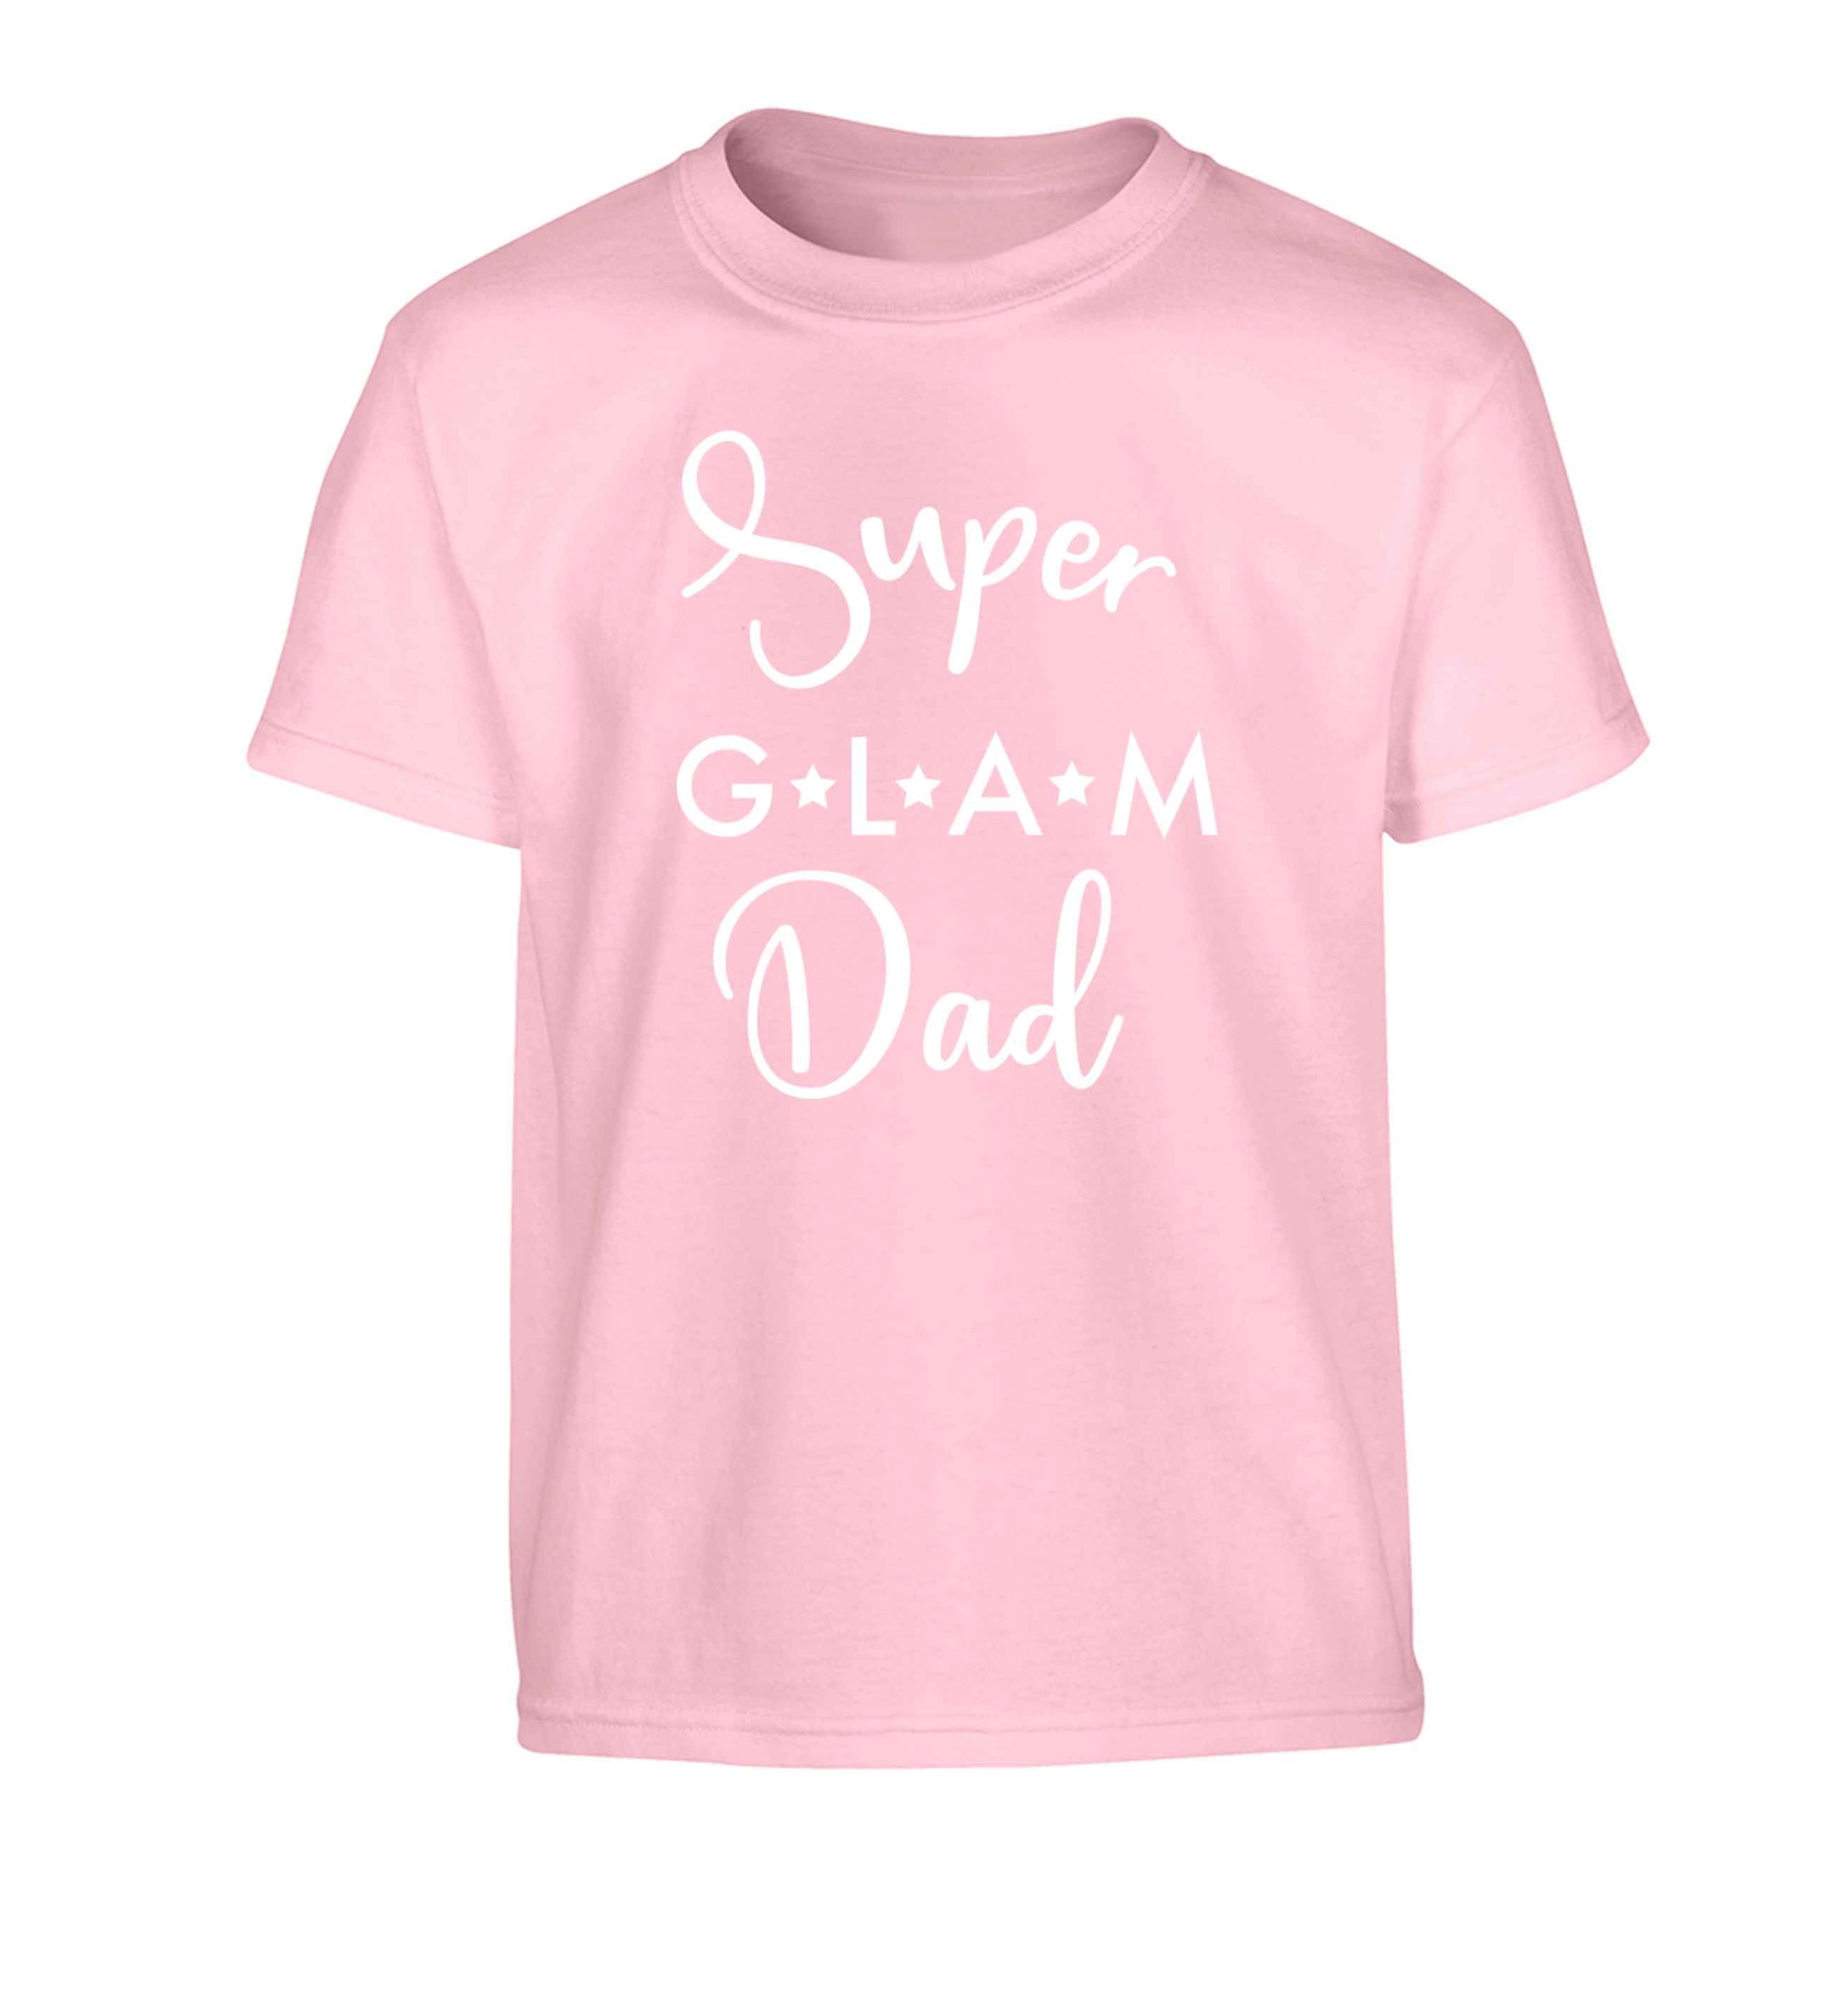 Super glam Dad Children's light pink Tshirt 12-13 Years